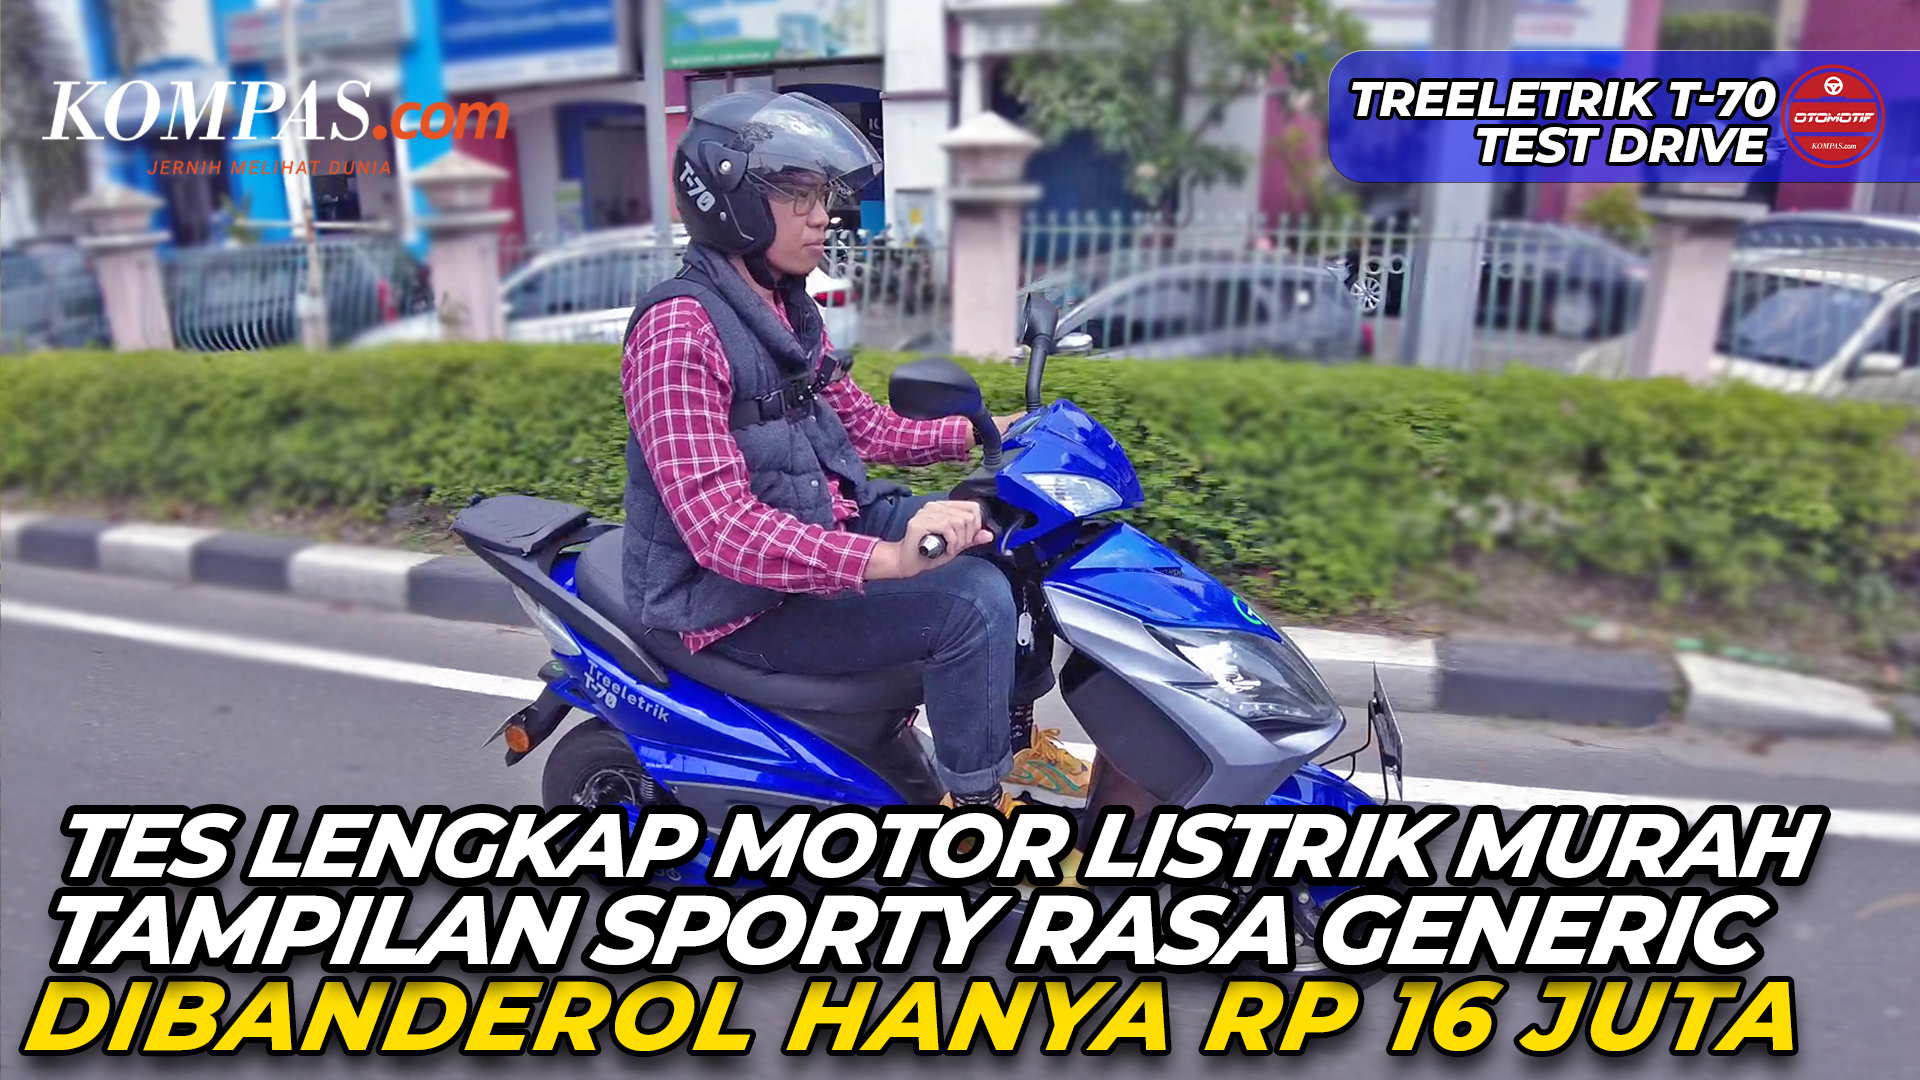 TREELETRIK T-70 | Motor Listrik Murah Tampilan Sporty Rasa Generic Dibanderol Hanya Rp 16 Juta